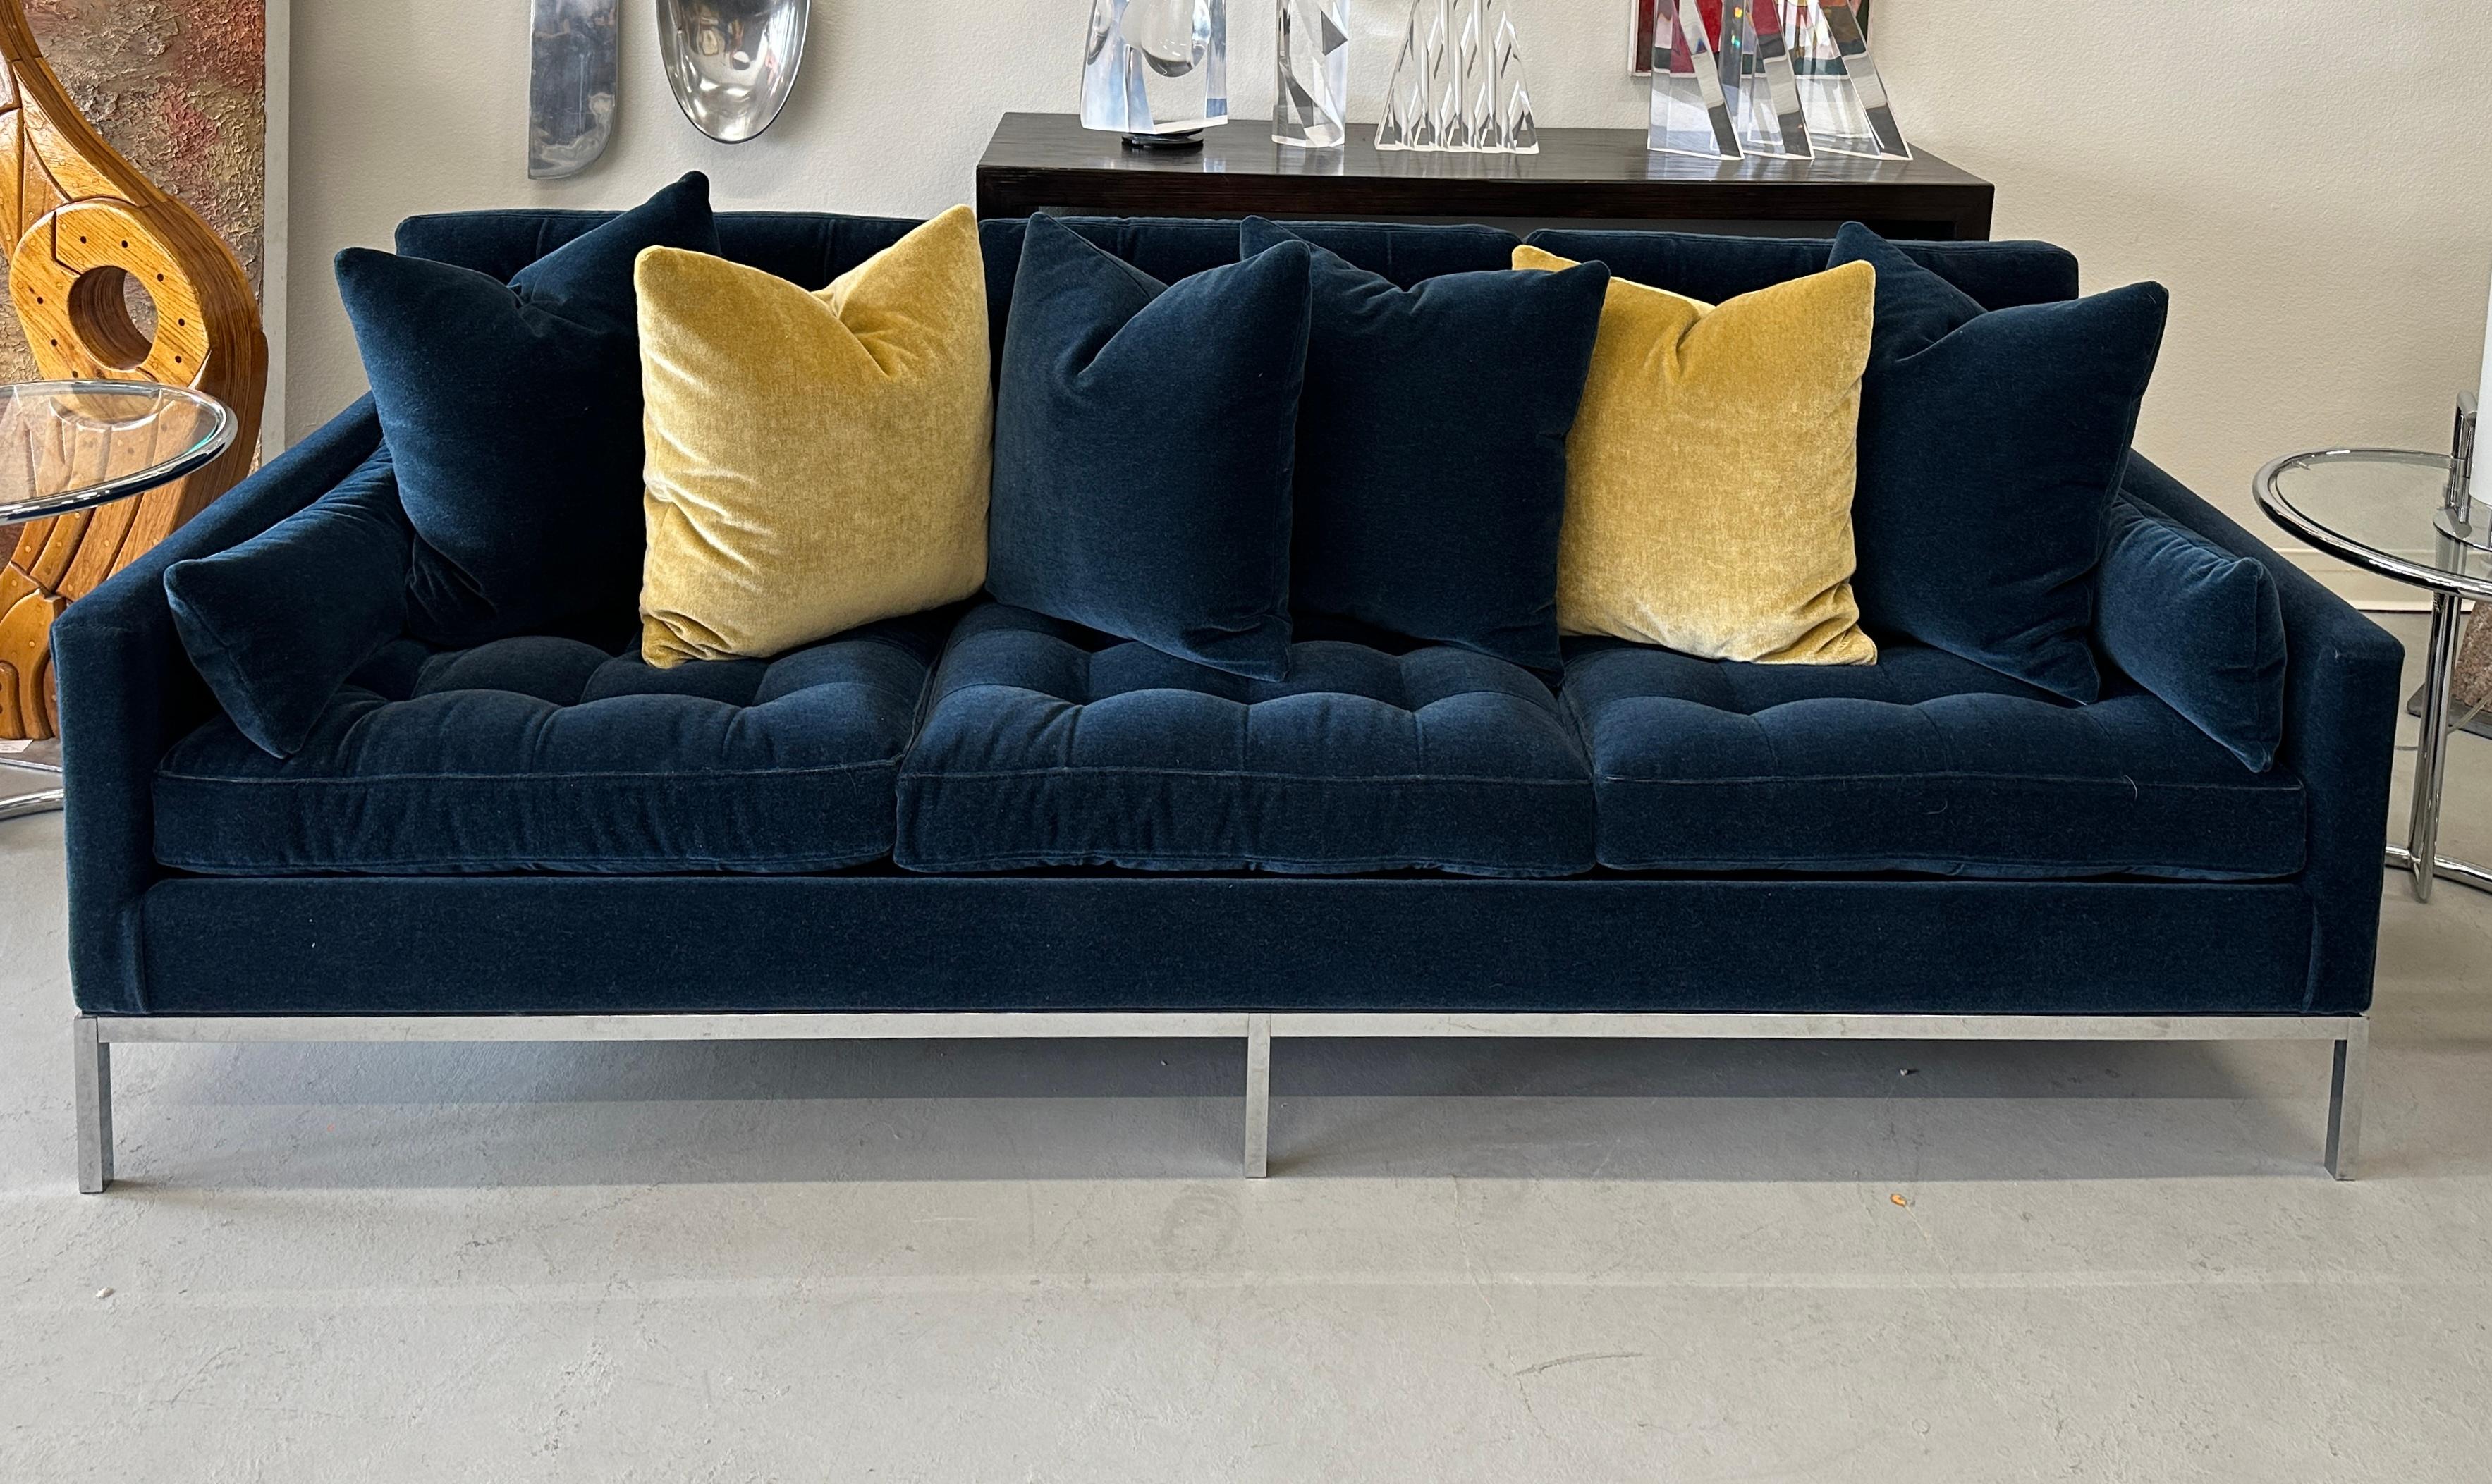 Un superbe canapé Florence Knoll vintage des années 1960 que nous avons fait refaire et retapisser dans un magnifique mohair de laine Kravet. La couleur est appelée bleu indigo. Une riche couleur marine. Nous avons fait fabriquer en même temps 6